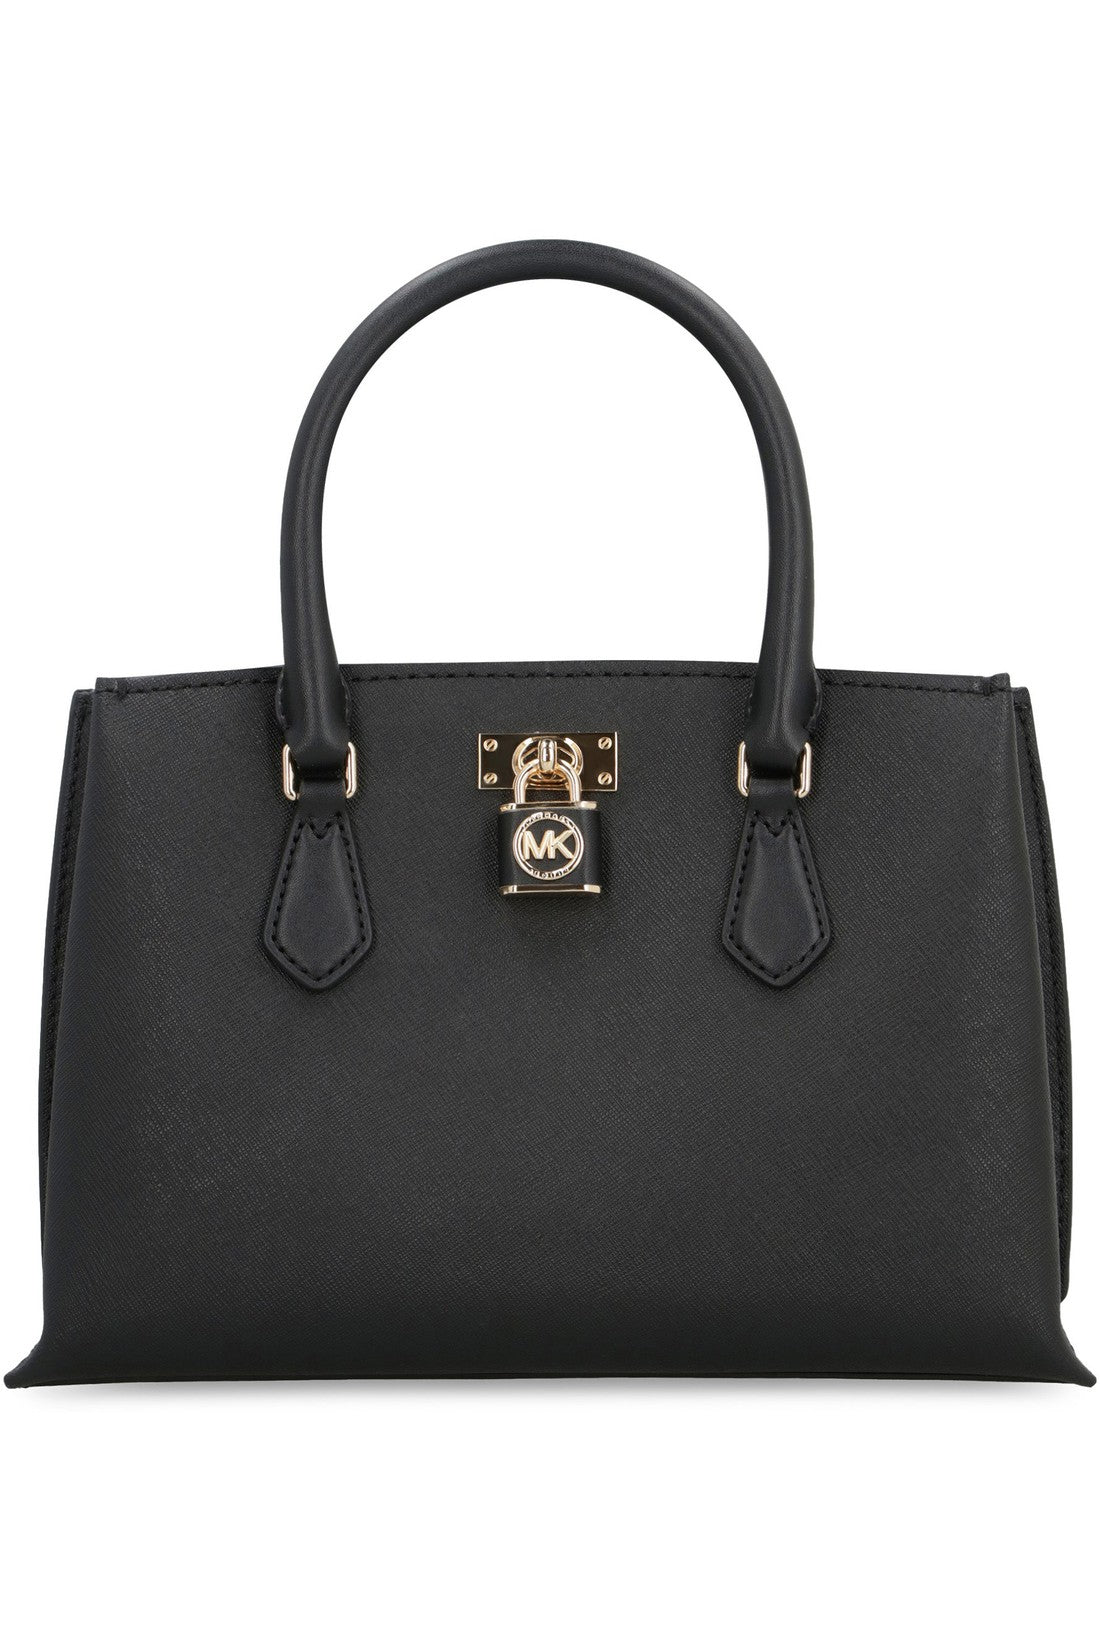 MICHAEL MICHAEL KORS-OUTLET-SALE-Ruby leather handbag-ARCHIVIST